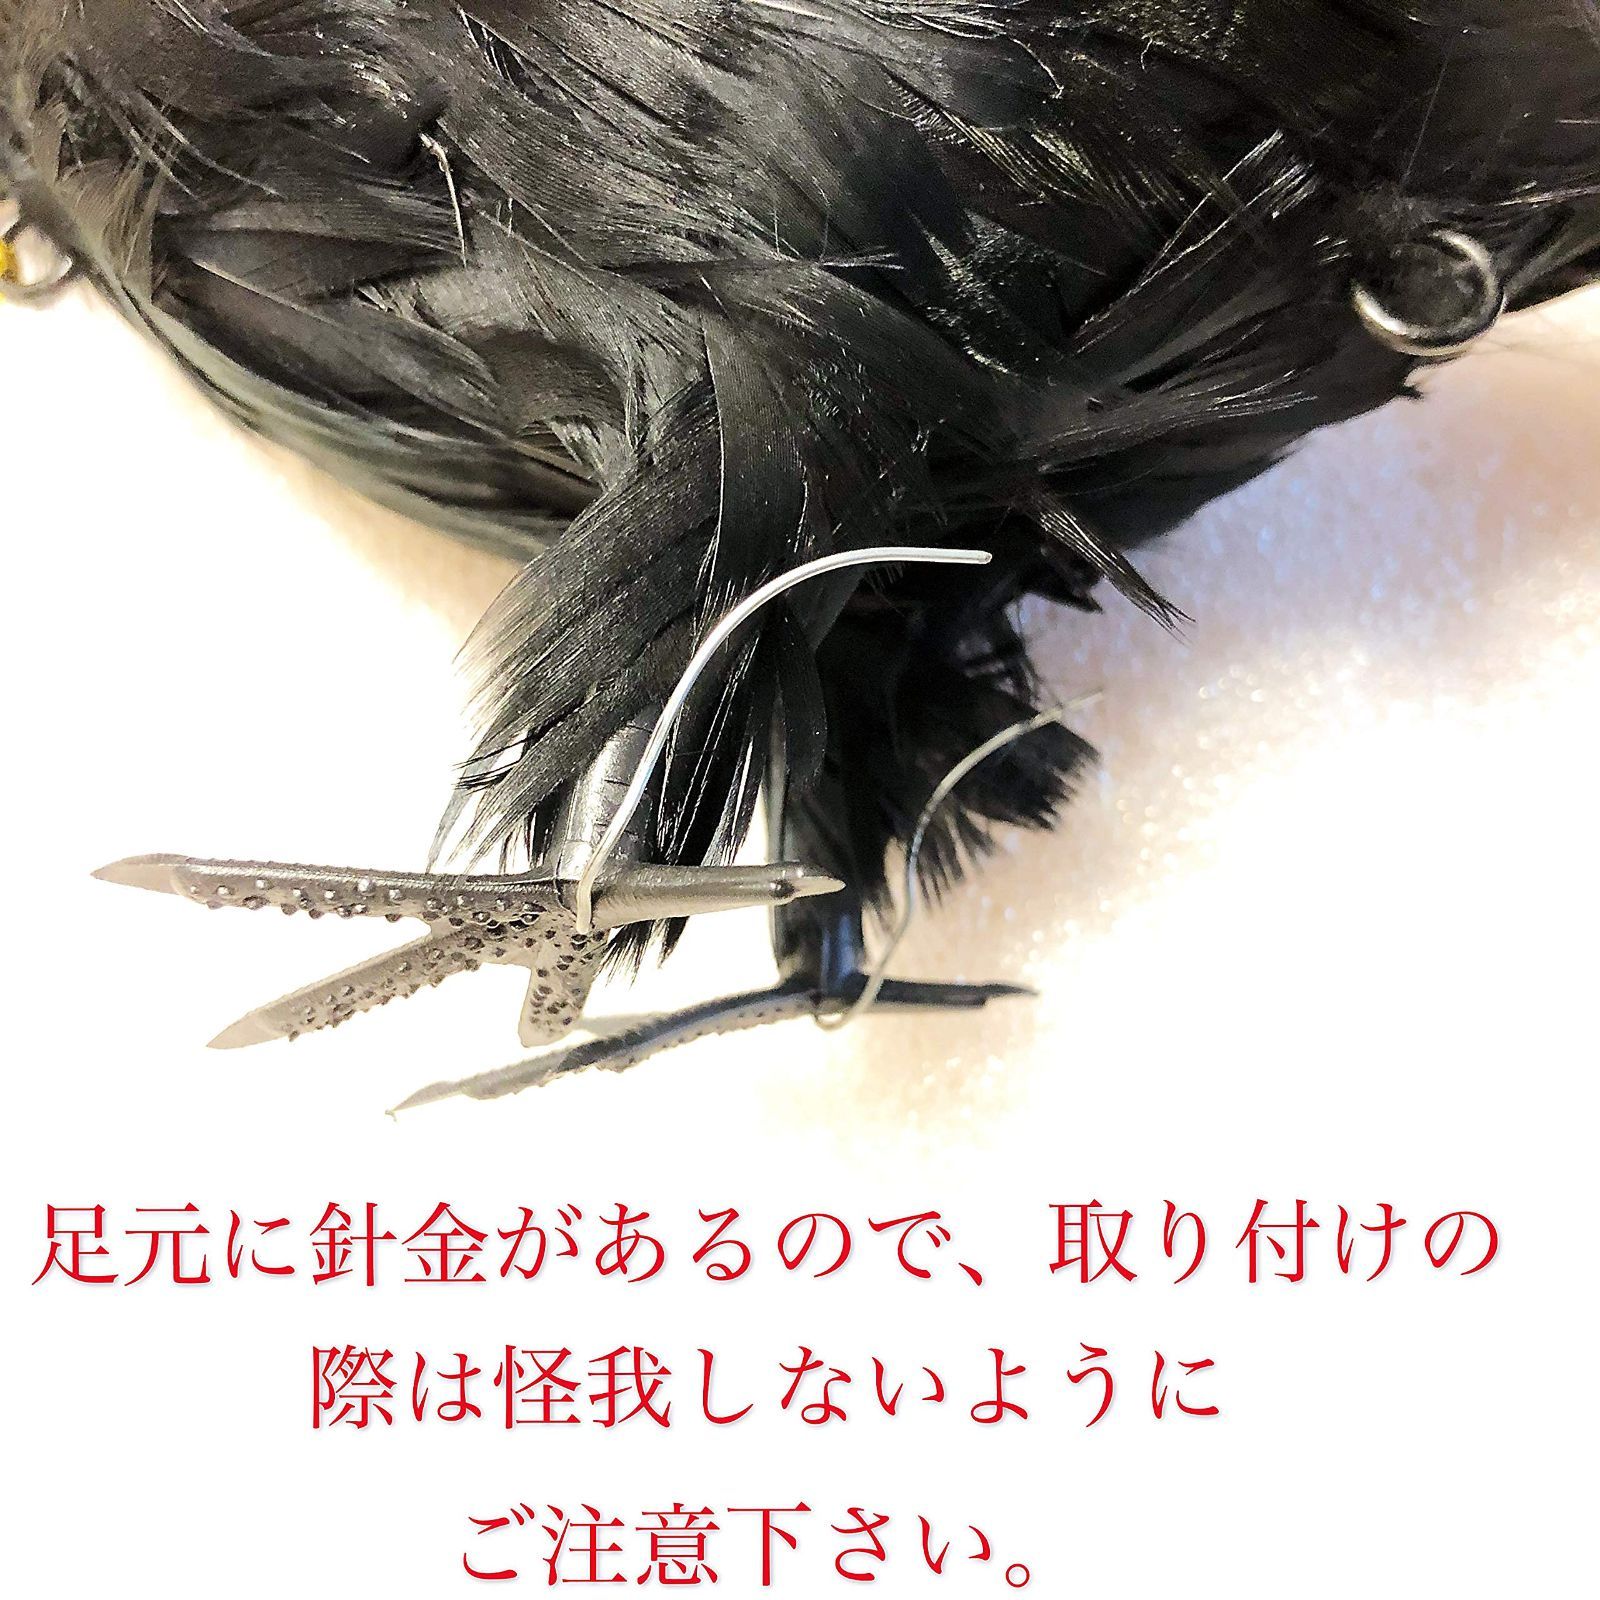 ONESORA カラスよけ 鳥よけグッズ 本物そっくり リアル羽毛カラス 原寸体サイズ 4羽 ぶら下げて吊るすだけ カラス撃退 - 1